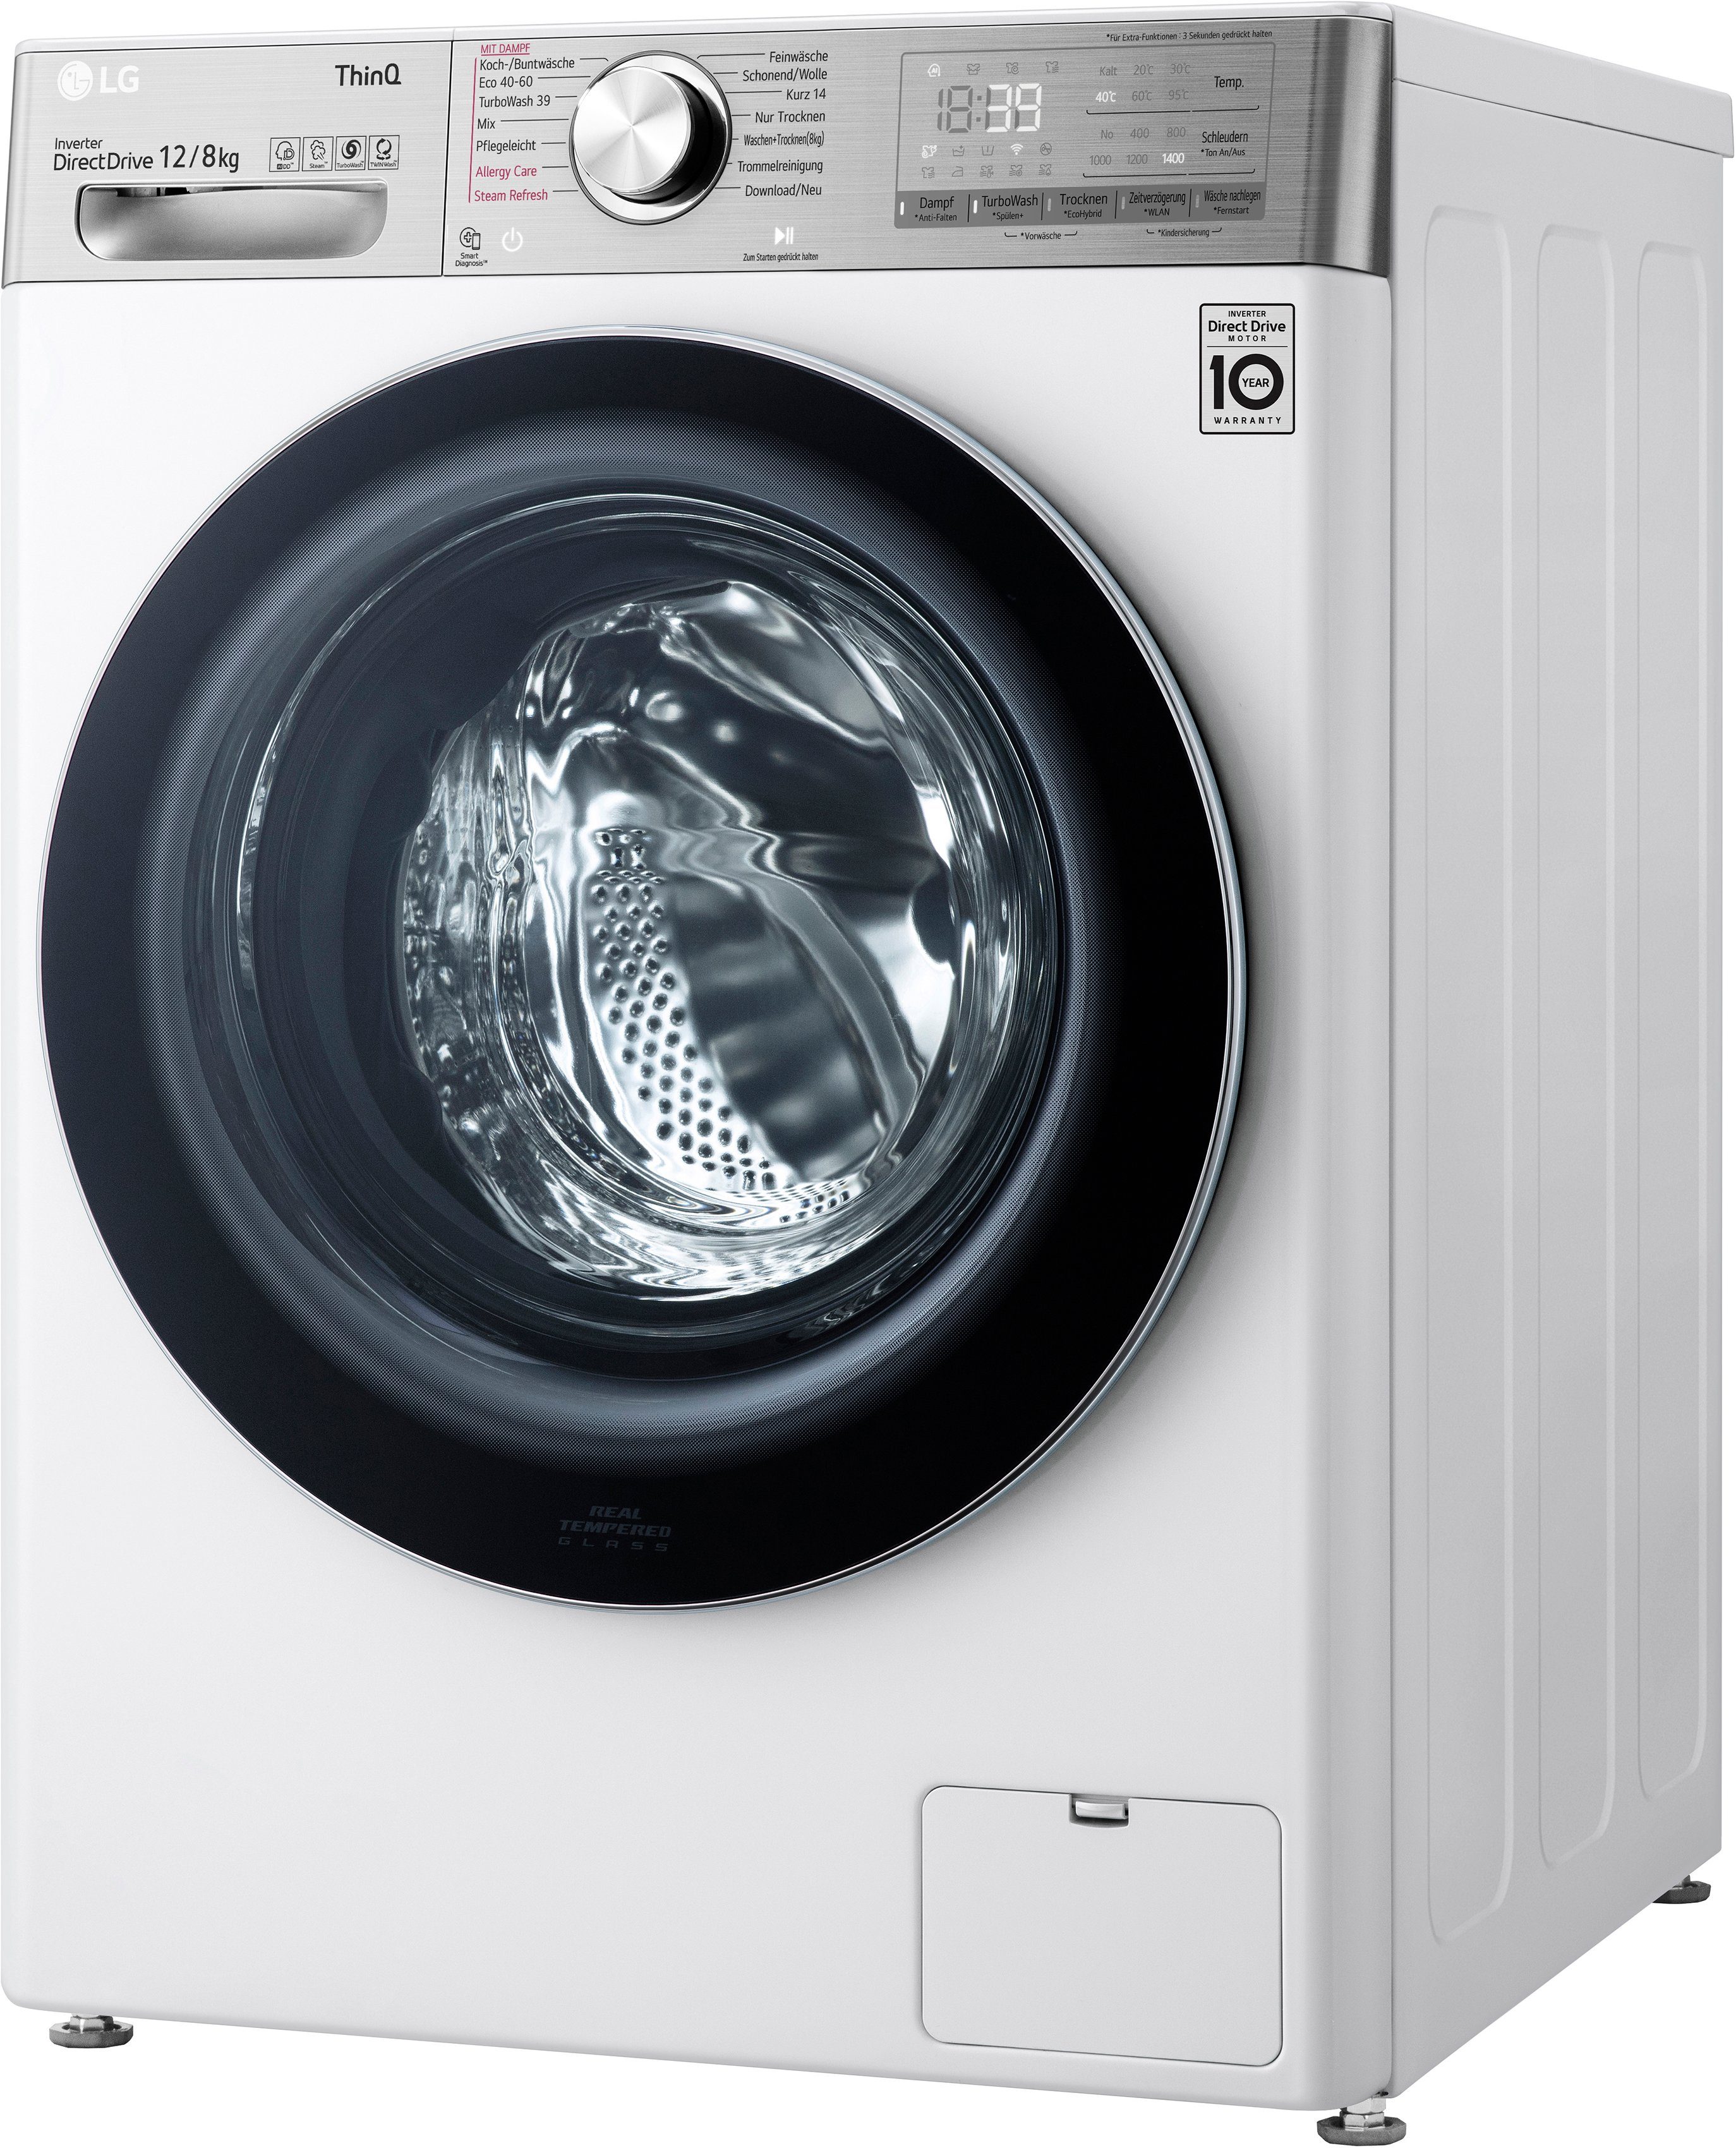 kg, LG Waschtrockner - 1400 V9WD128H2, 12 8 U/min, Minuten Waschen TurboWash® nur kg, in 39